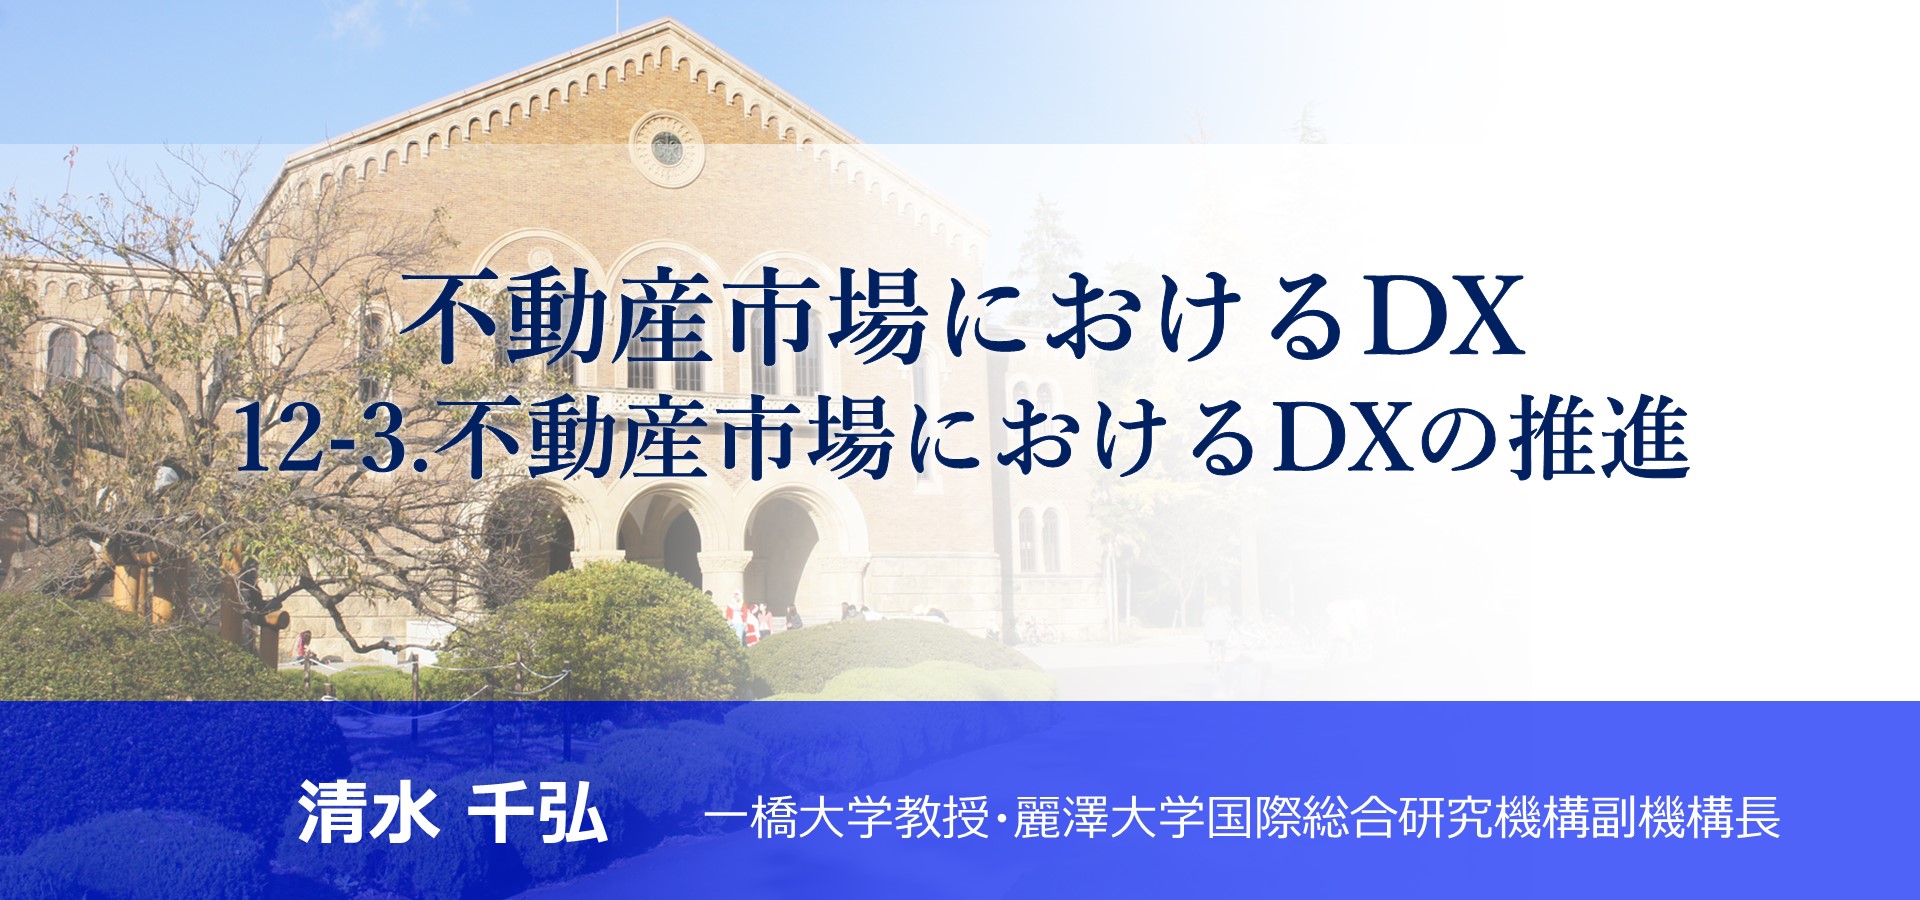 「12-3. 不動産市場におけるDXの推進」のアイキャッチ画像